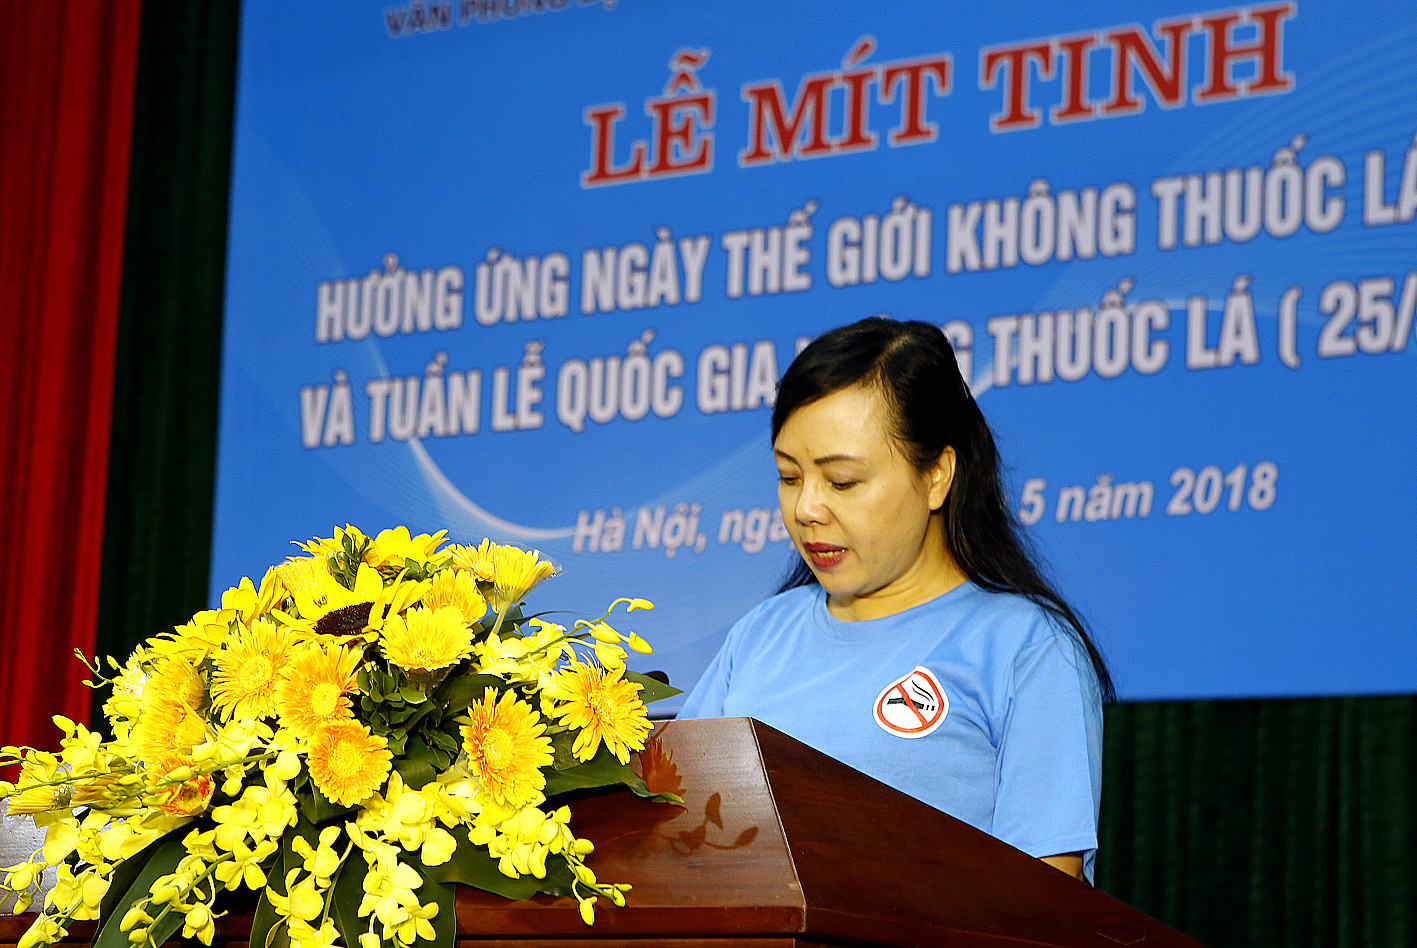 Mỗi năm có 40 nghìn người Việt Nam tử vong do sử dụng thuốc lá